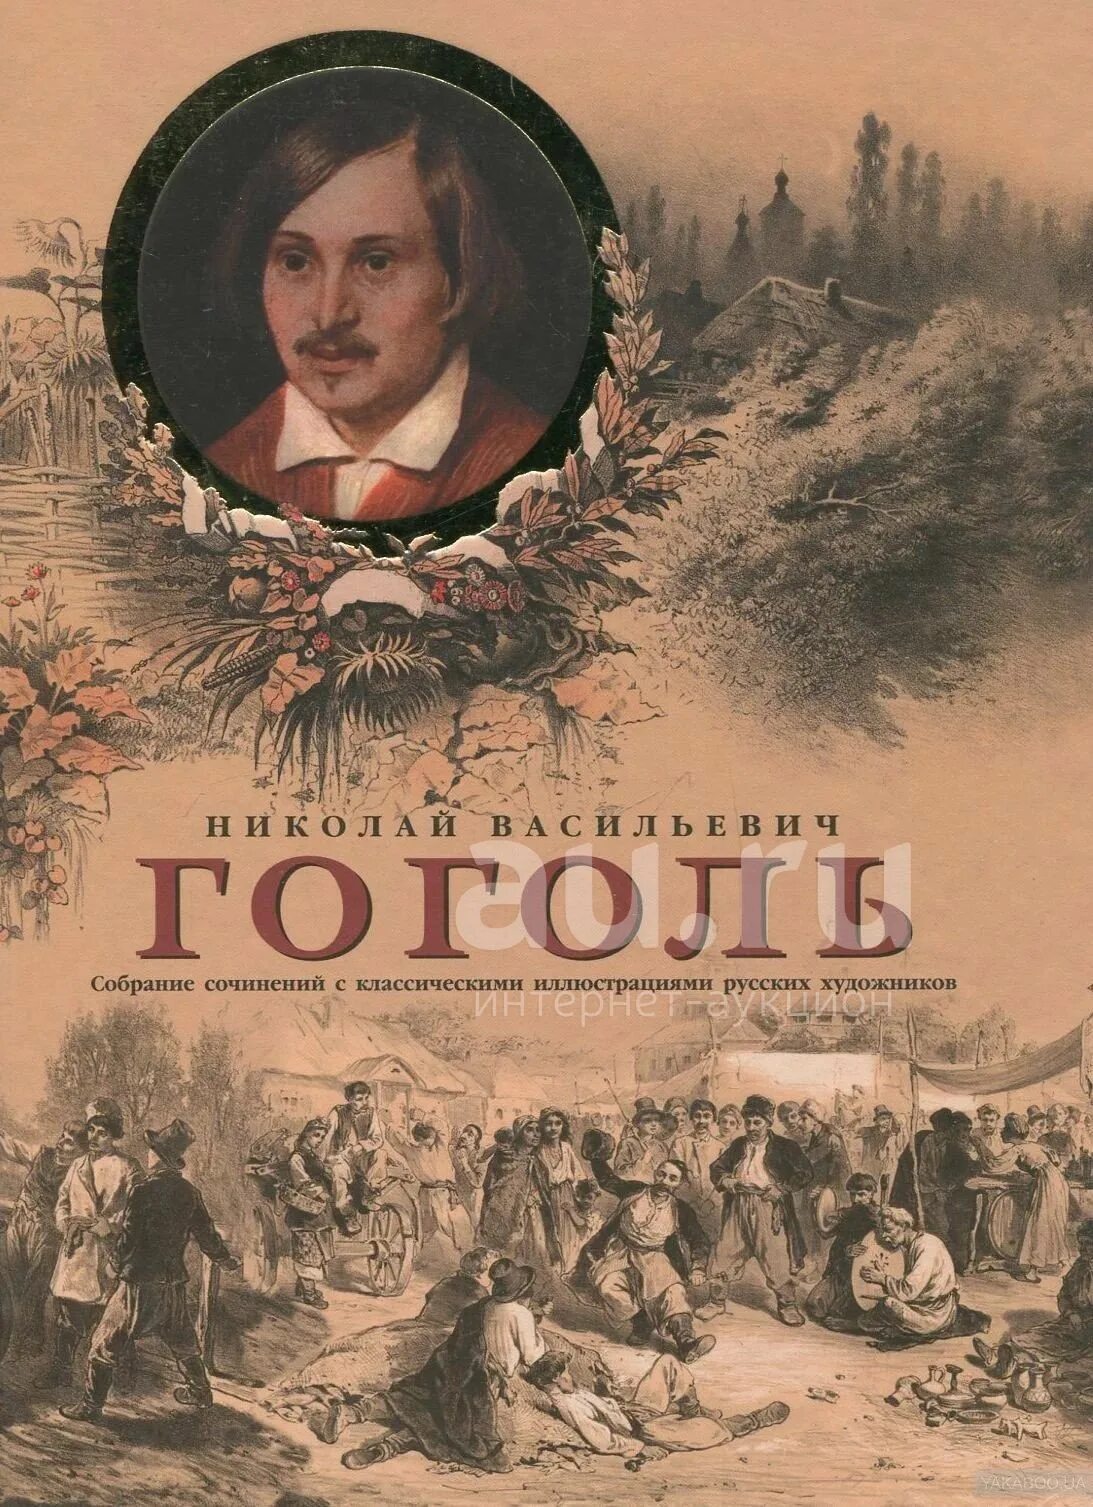 Обложки книг Гоголя.